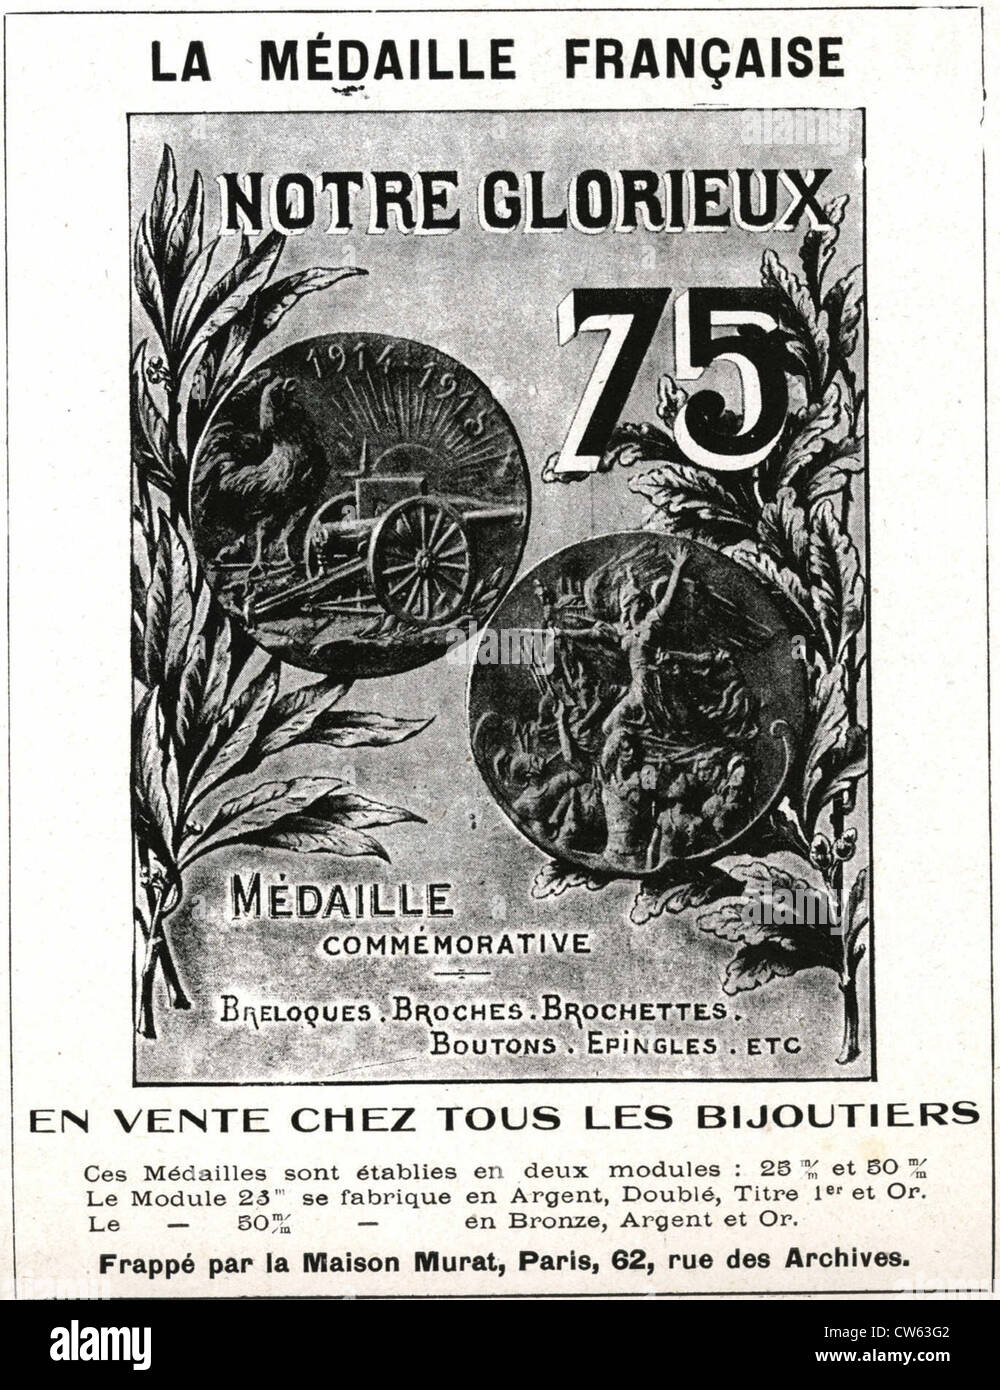 Publicité, La Médaille française Stockfoto